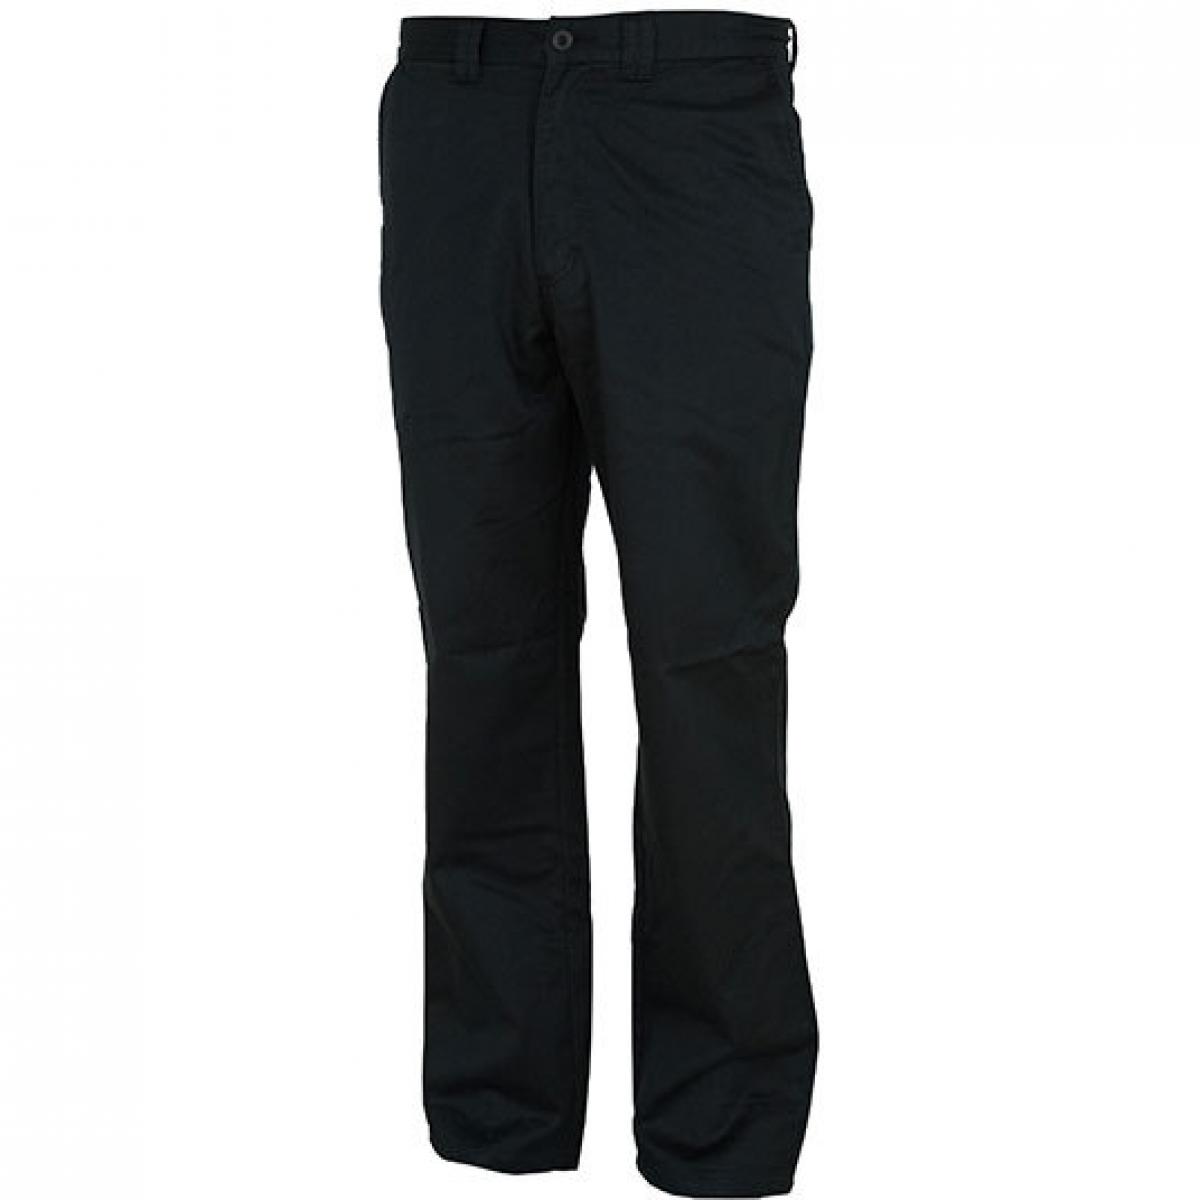 Hersteller: Carson Classic Casuals Herstellernummer: KTHK Artikelbezeichnung: Classic Khaki Pants / Bei 60 Grad waschbar Farbe: Black